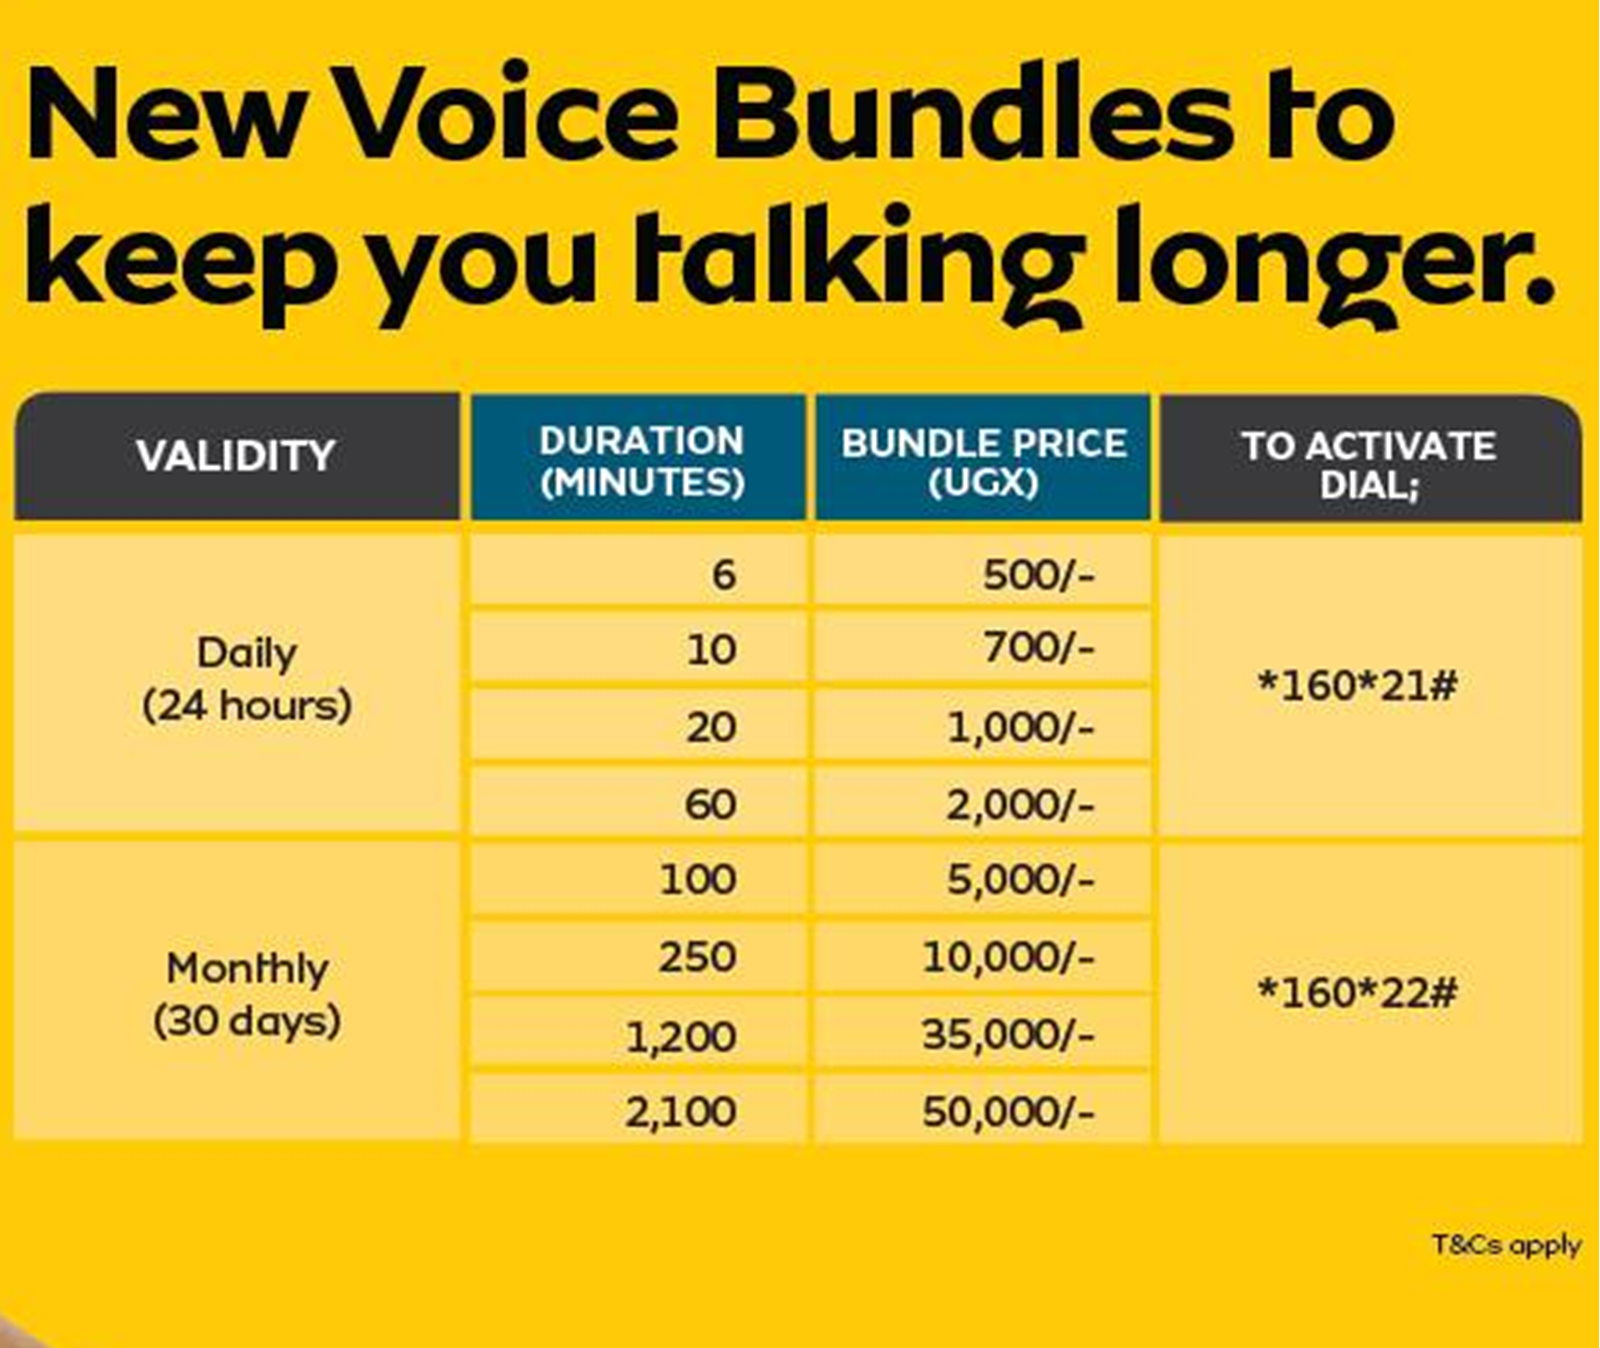 the new mtn voice bundles